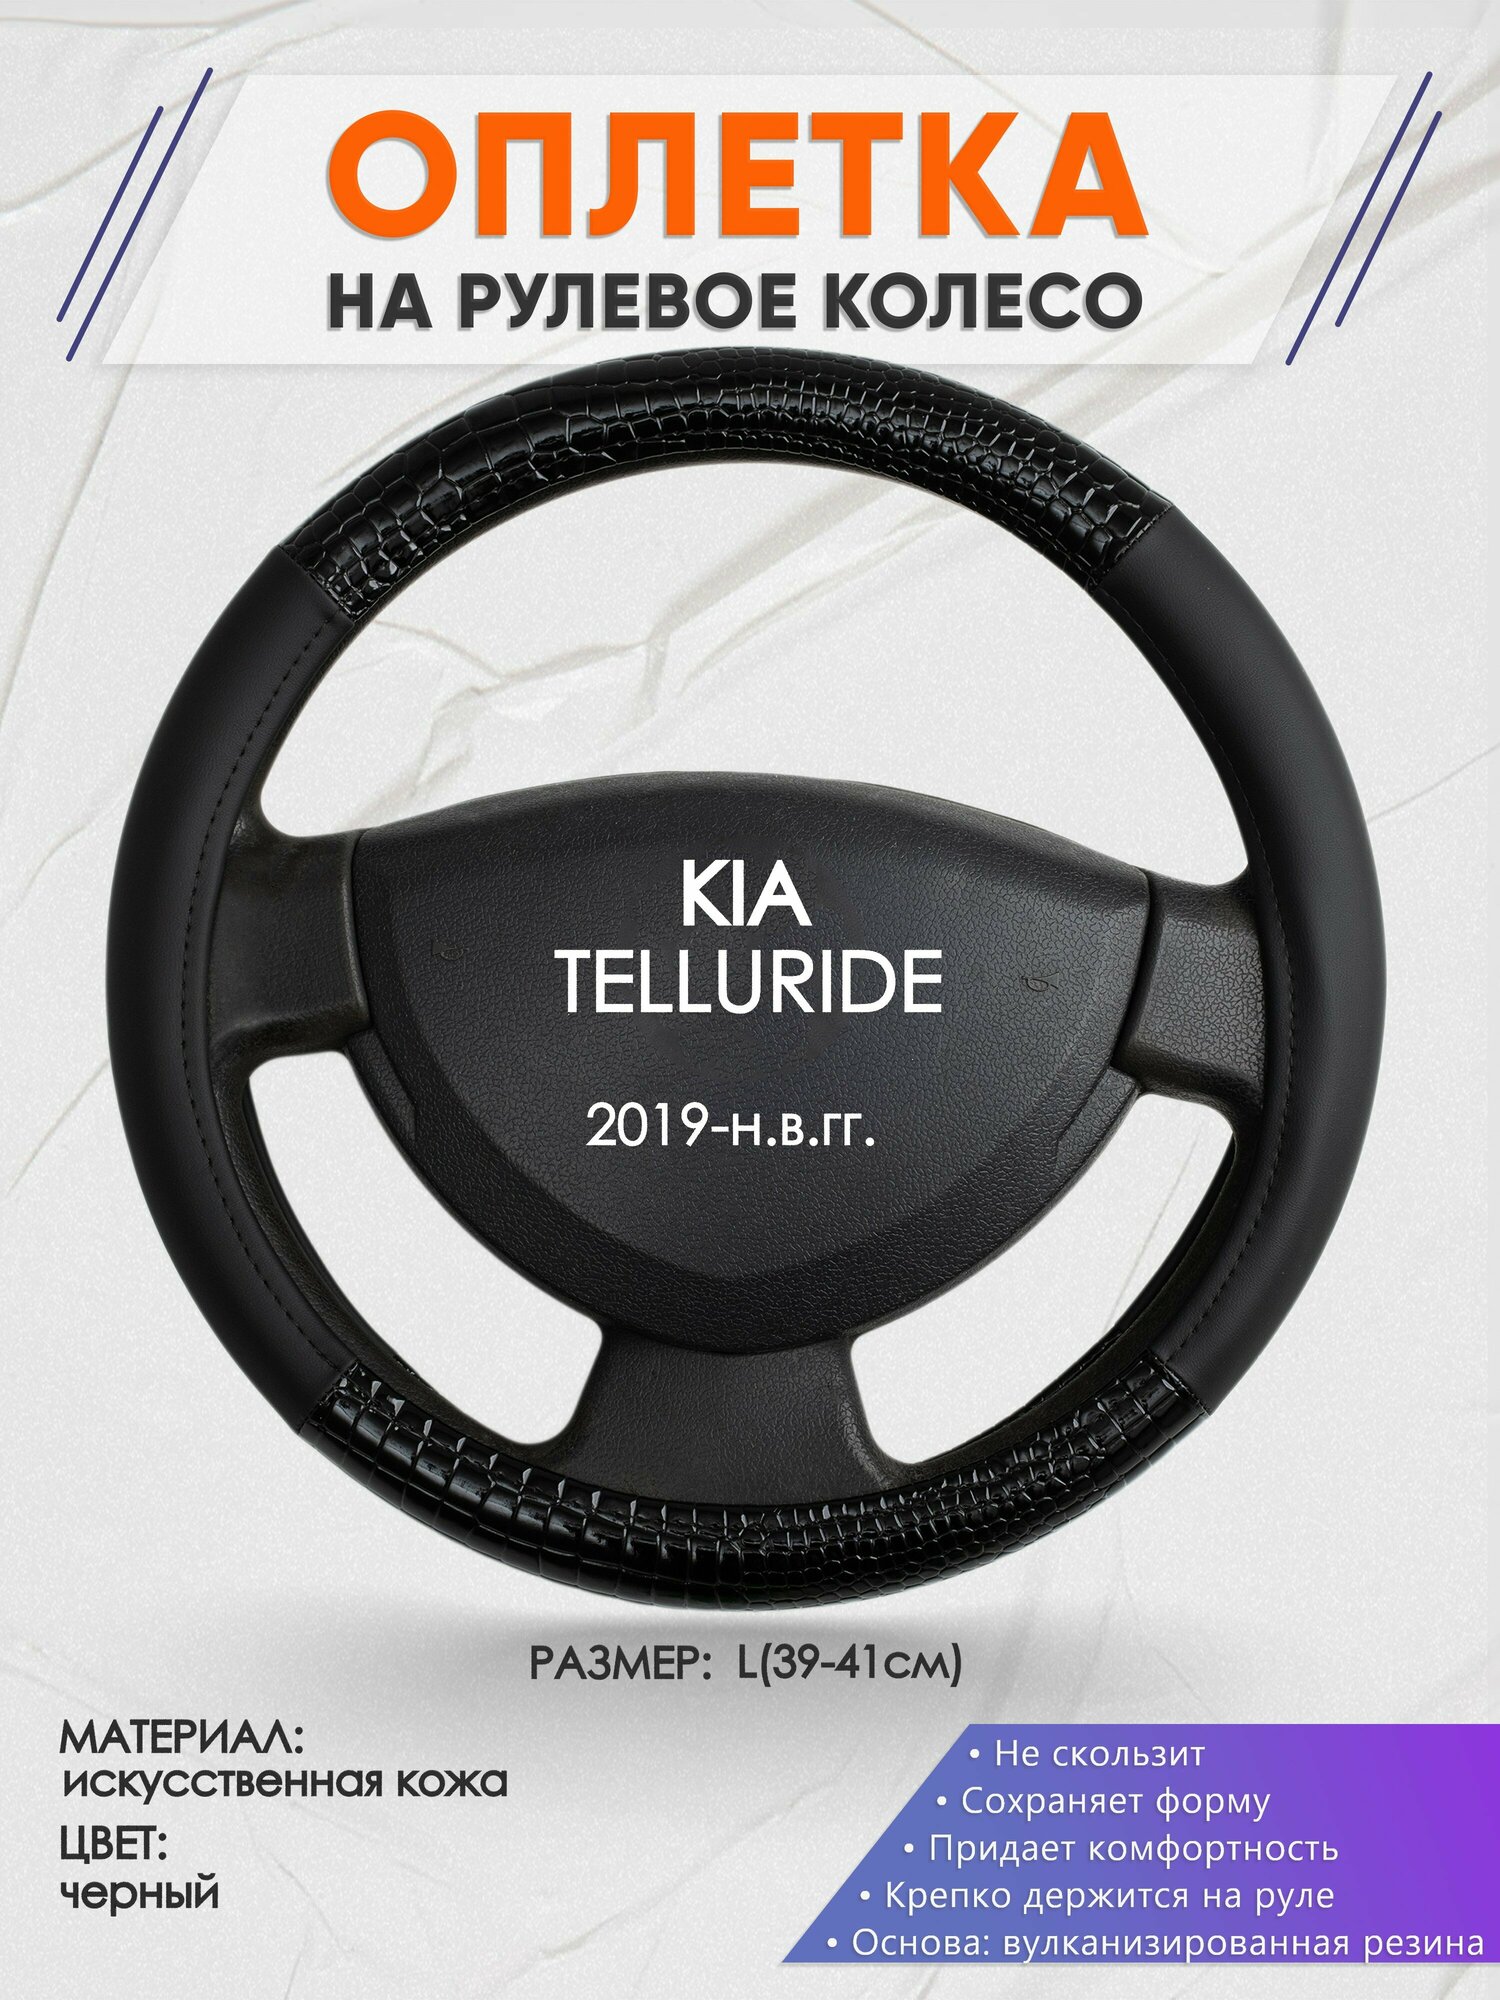 Оплетка на руль для KIA TELLURIDE(Киа Телуриде) 2019-н. в, L(39-41см), Искусственная кожа 83